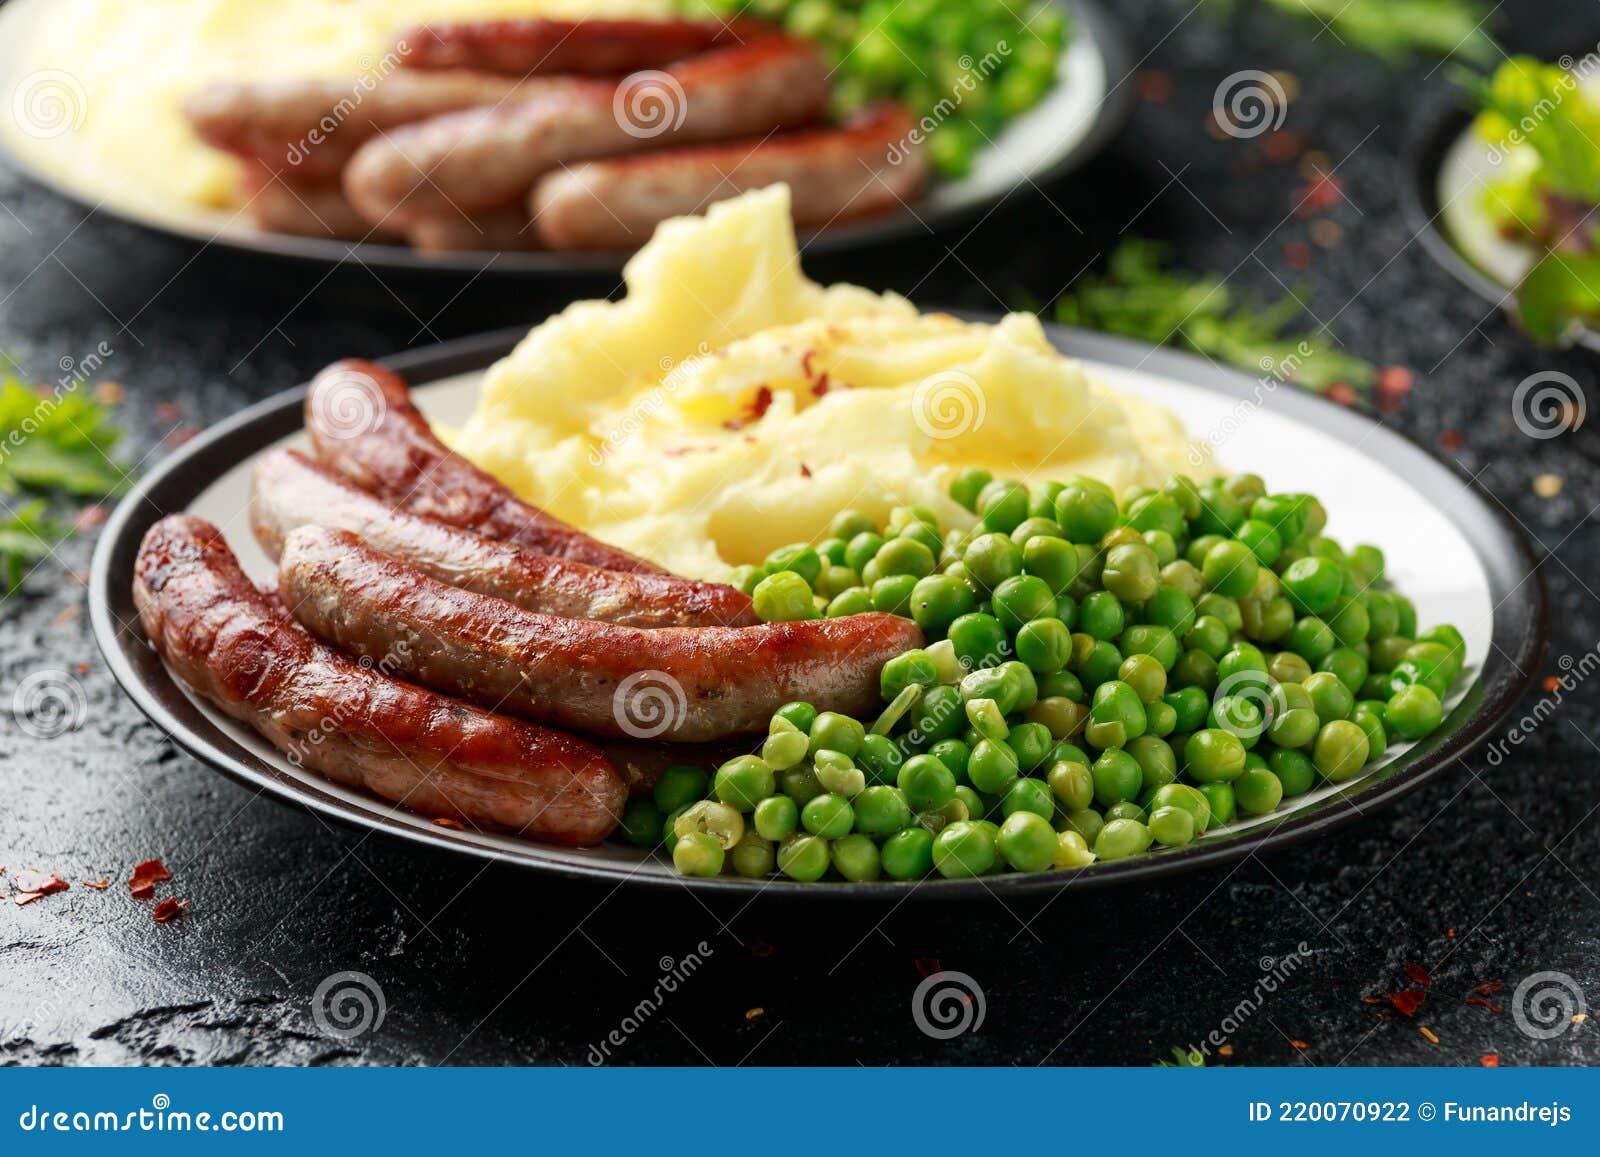 英国酒吧的香肠和肉汁土豆泥高清摄影大图-千库网